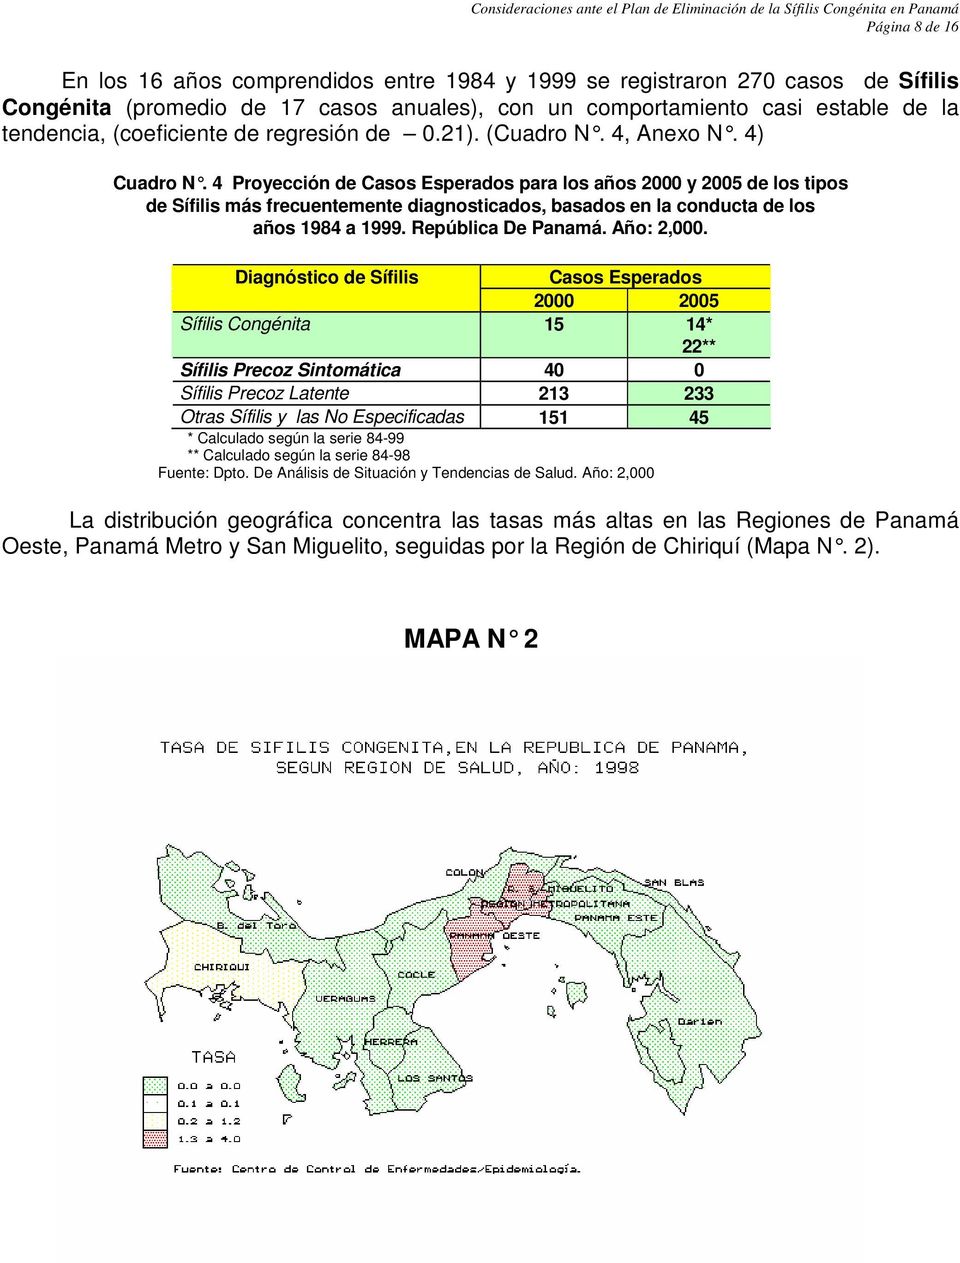 4 Proyección de Casos Esperados para los años 2000 y 2005 de los tipos de Sífilis más frecuentemente diagnosticados, basados en la conducta de los años 1984 a 1999. República De Panamá. Año: 2,000.